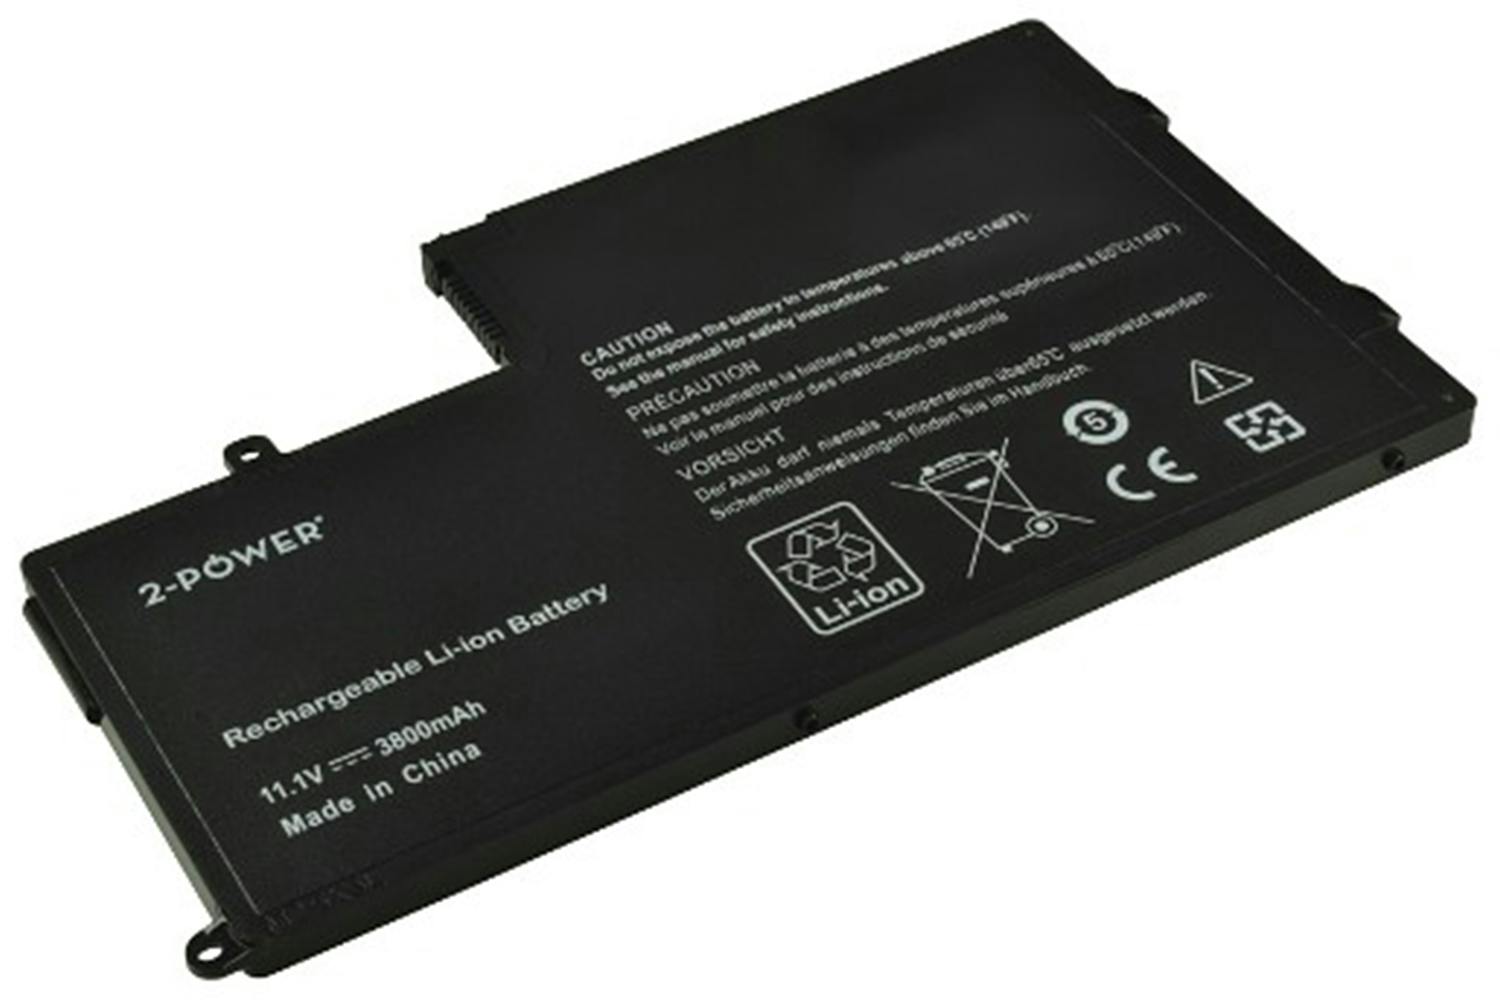 2-Power Main Battery Pack 11.1V 3800mAh